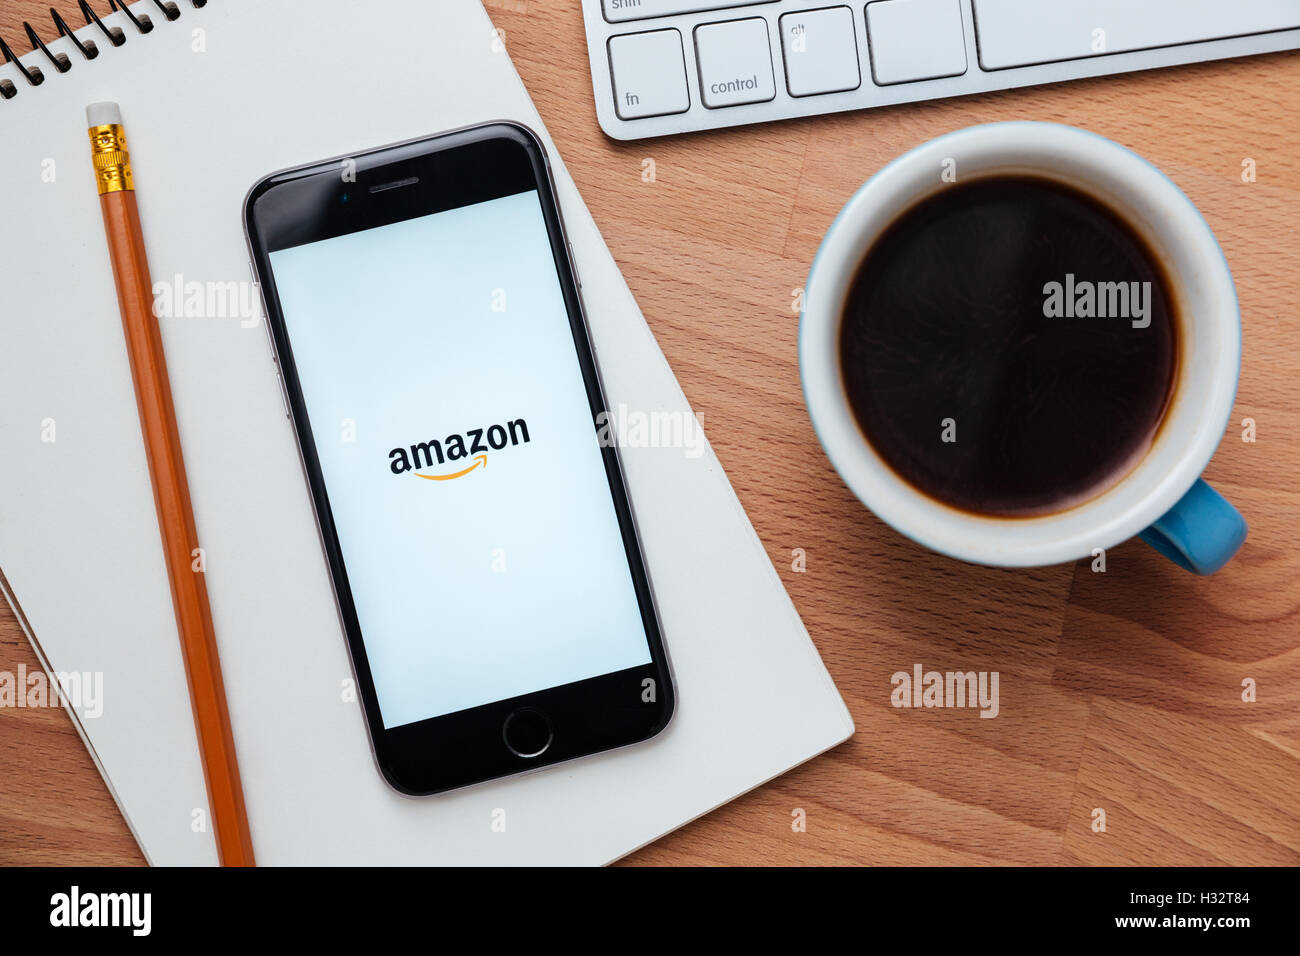 SARAWAK, MALAYSIA-27. April 2016: Amazon apps auf dem Iphone-Bildschirm. Amazon Amazon Inc., der größte Internet-Einzelhändler in Besitz Stockfoto